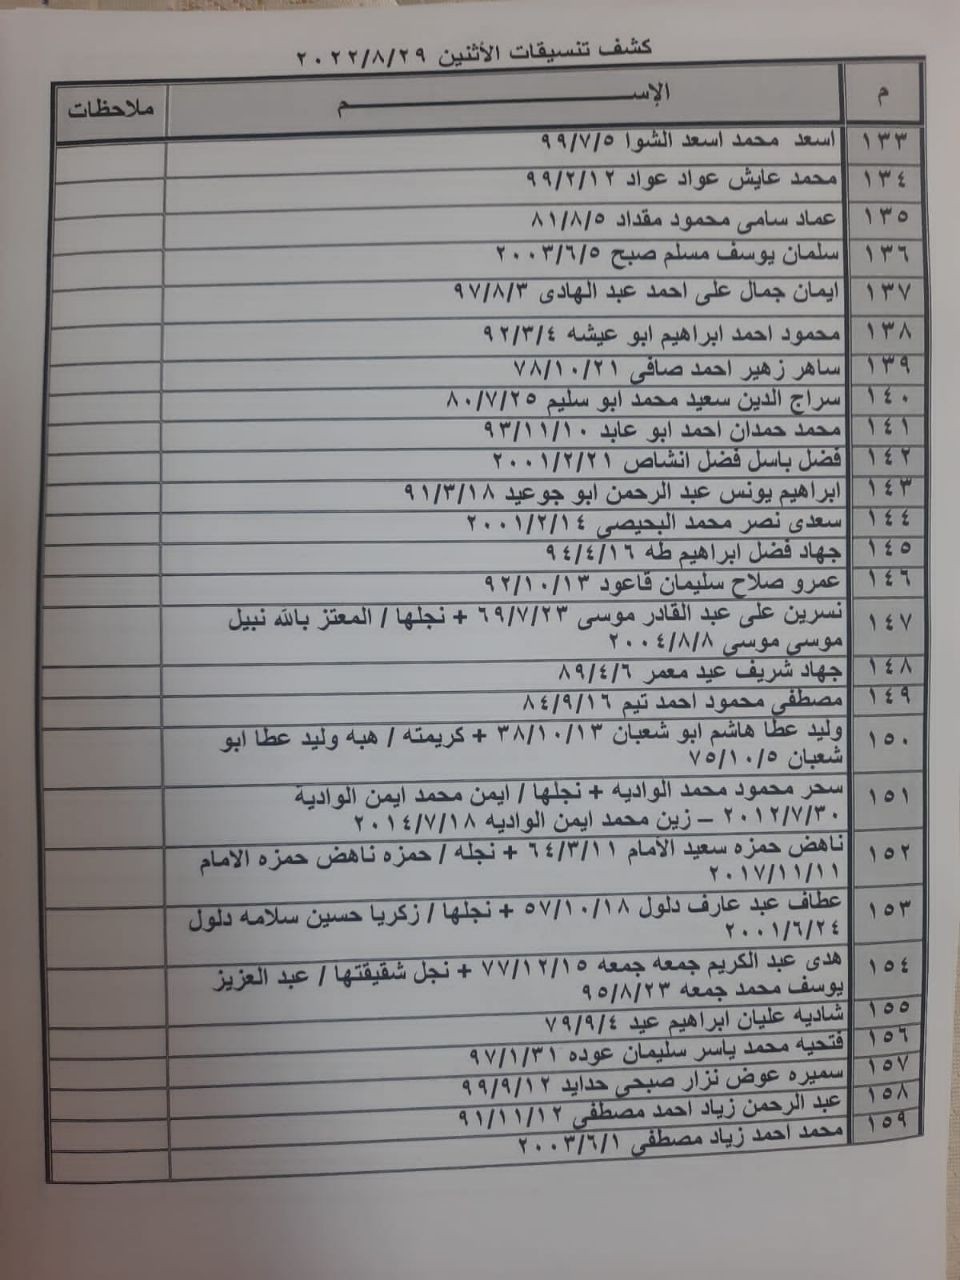 بالأسماء: داخلية غزّة تنشر كشف "التنسيقات المصرية" الإثنين 29 أغسطس 2022